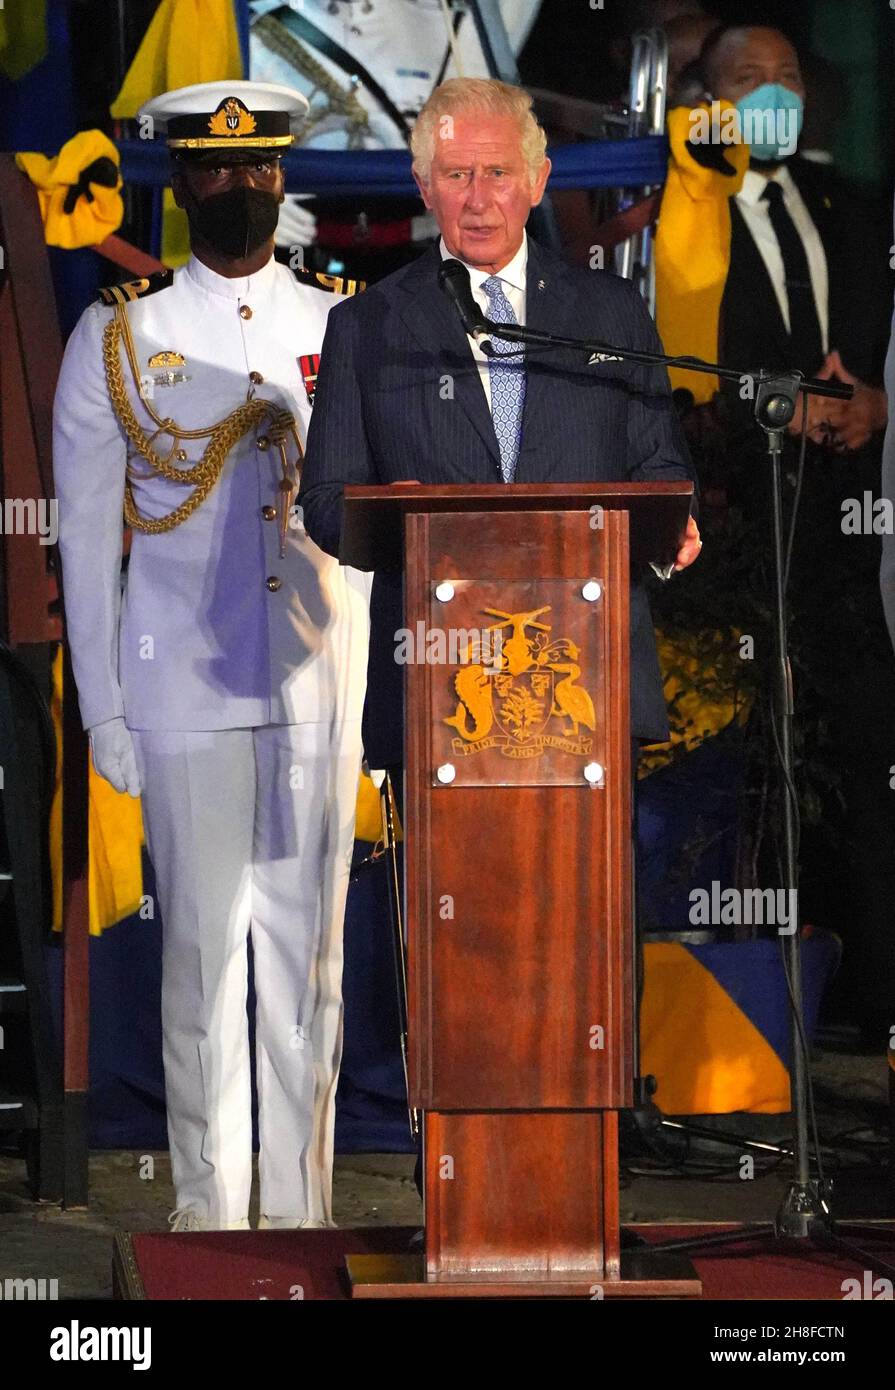 Der Prinz von Wales (links) hält eine Rede auf dem Heroes Square in Bridgetown Barbados im Anschluss an eine Zeremonie anlässlich des Übergangs des Landes zu einer republik innerhalb des Commonwealth. Bilddatum: Dienstag, 30. November 2021. Stockfoto